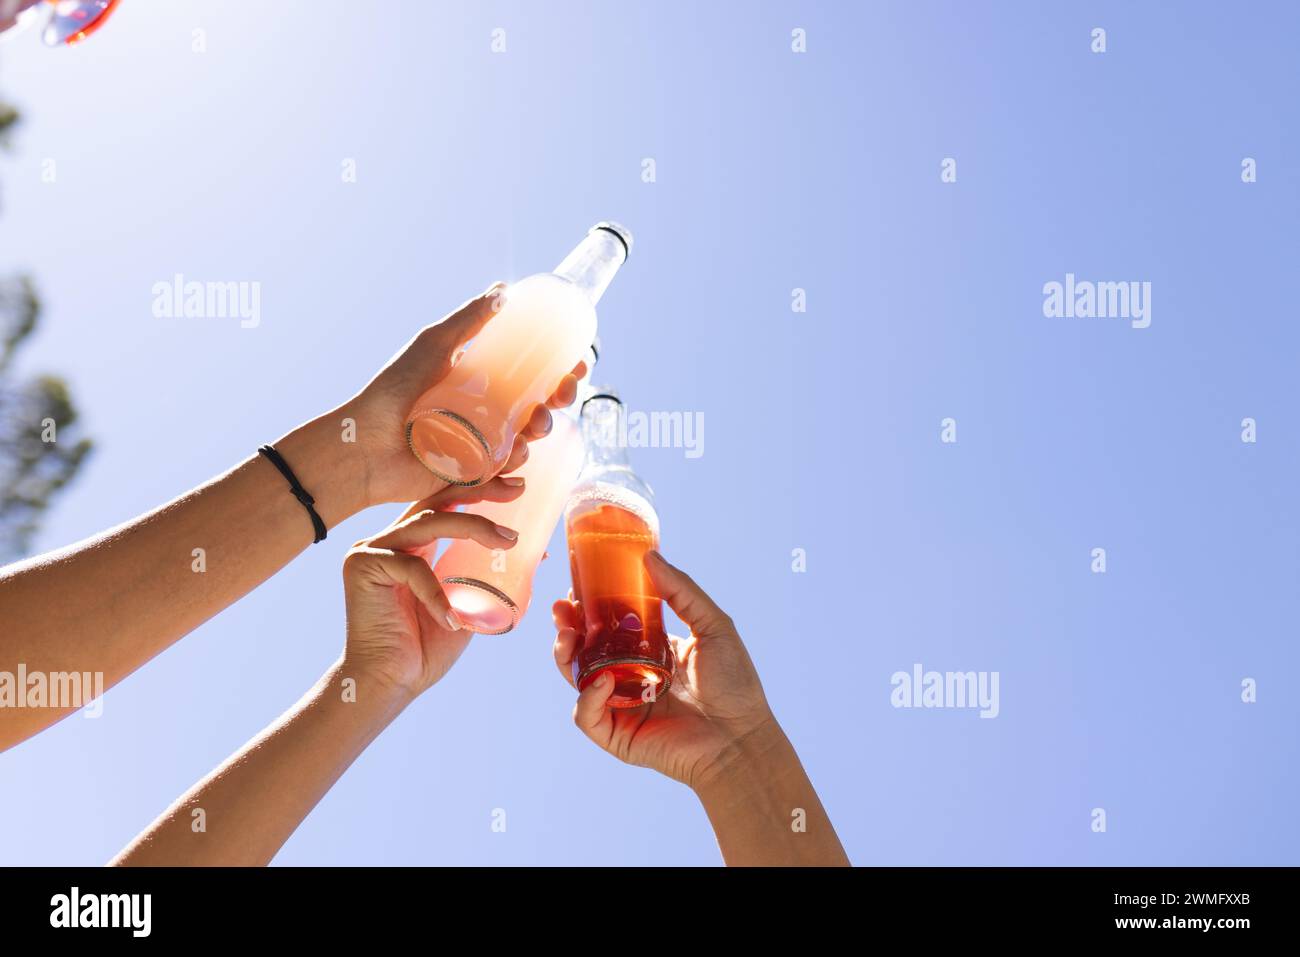 Hände, die Soda-Flaschen gegen einen klaren blauen Himmel drücken Stockfoto